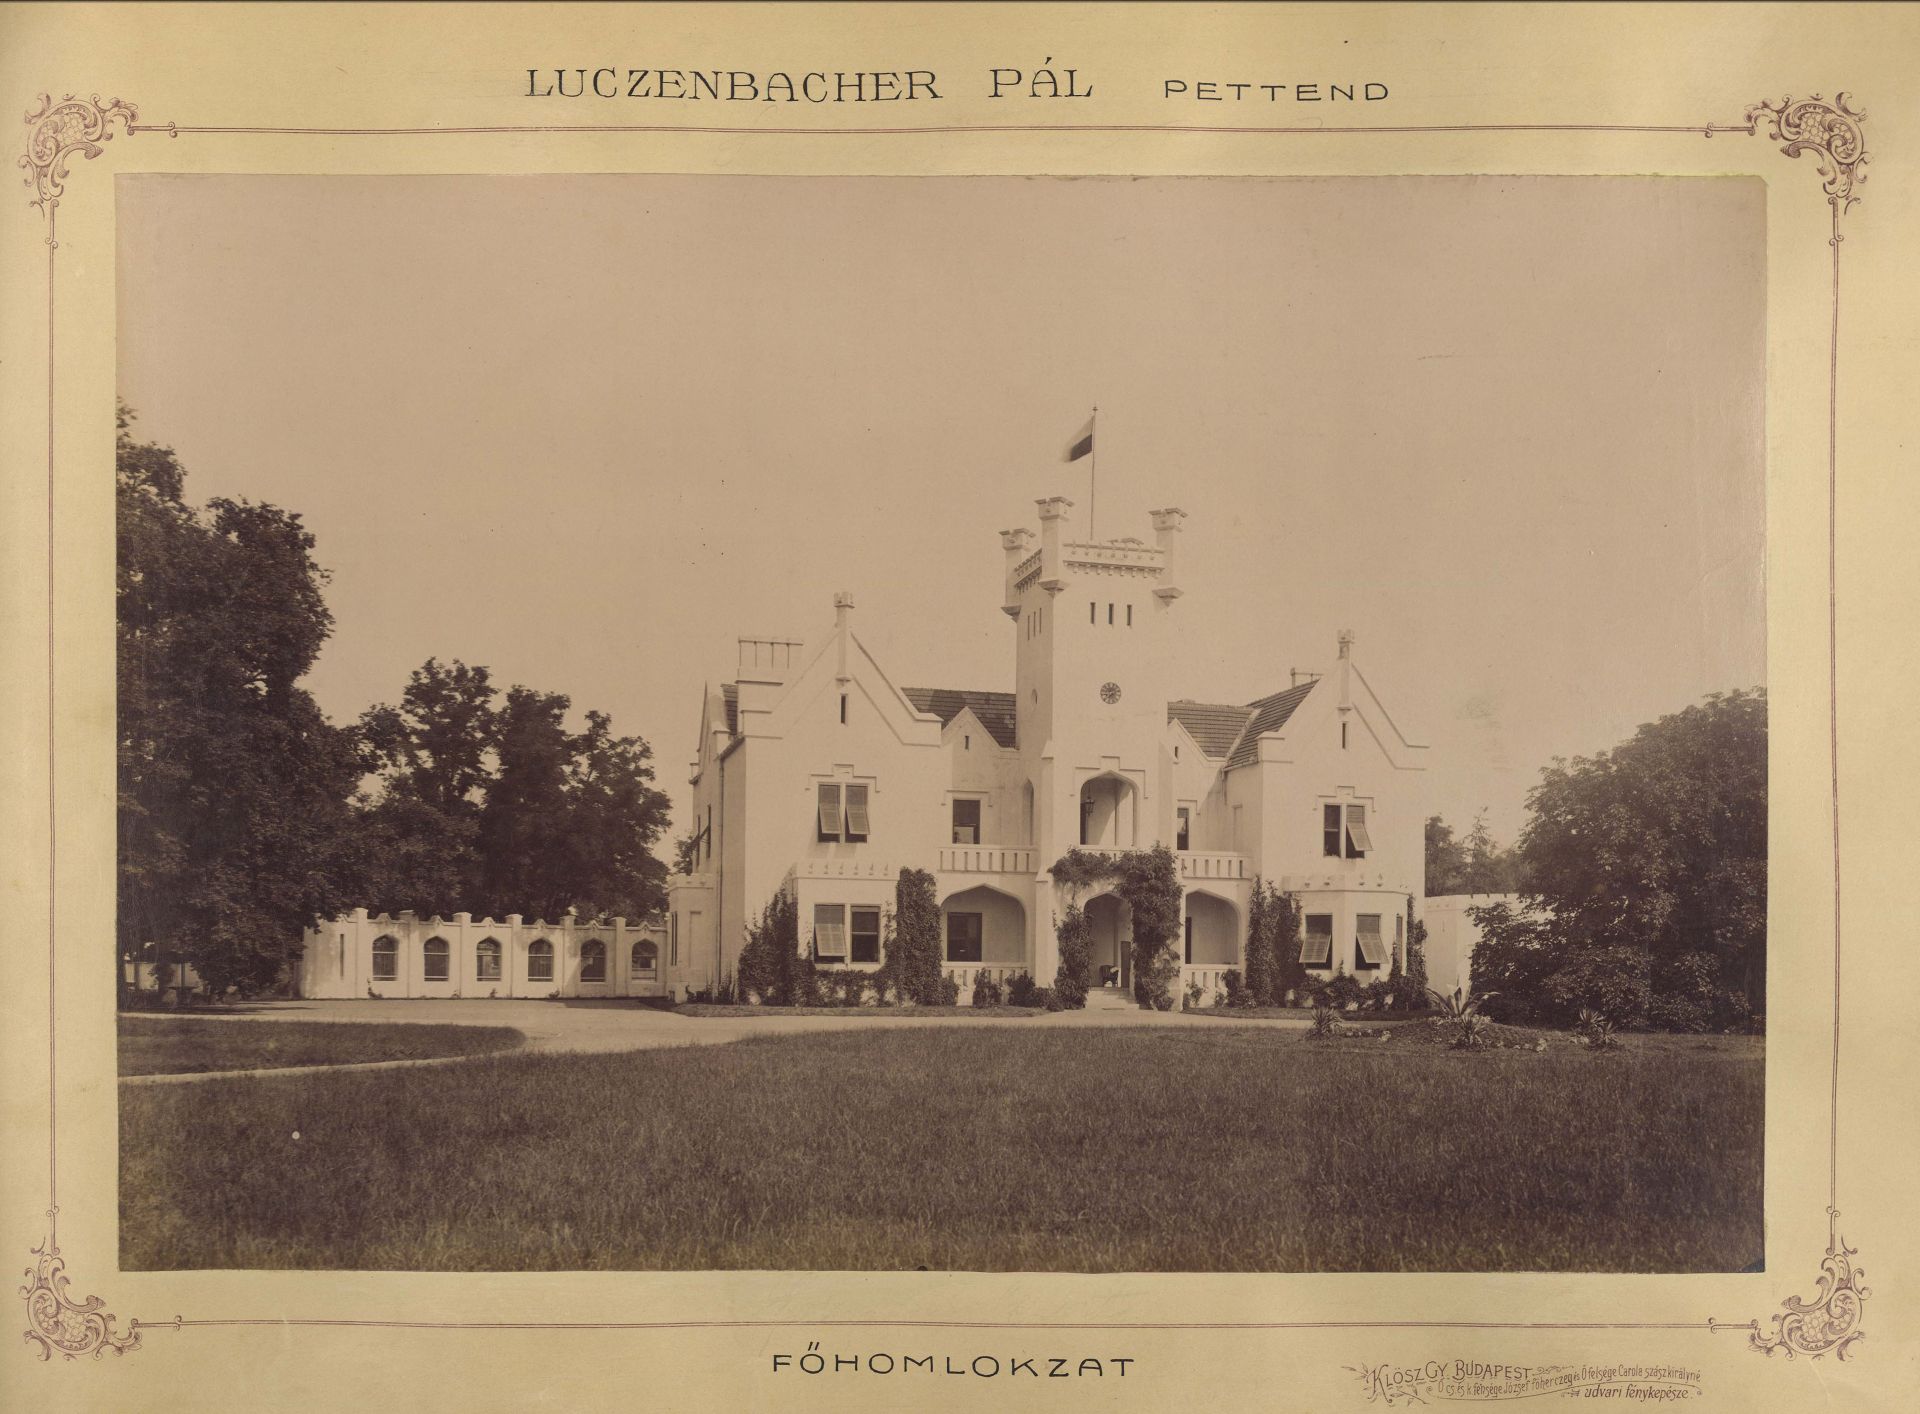 Luczenbacher-kastély főhomlokzata. A felvétel 1895-1899 között készült. A kép forrása: Fortepan / Budapest Főváros Levéltára. Levéltári jelzet: HU.BFL.XV.19.d.1.11.081